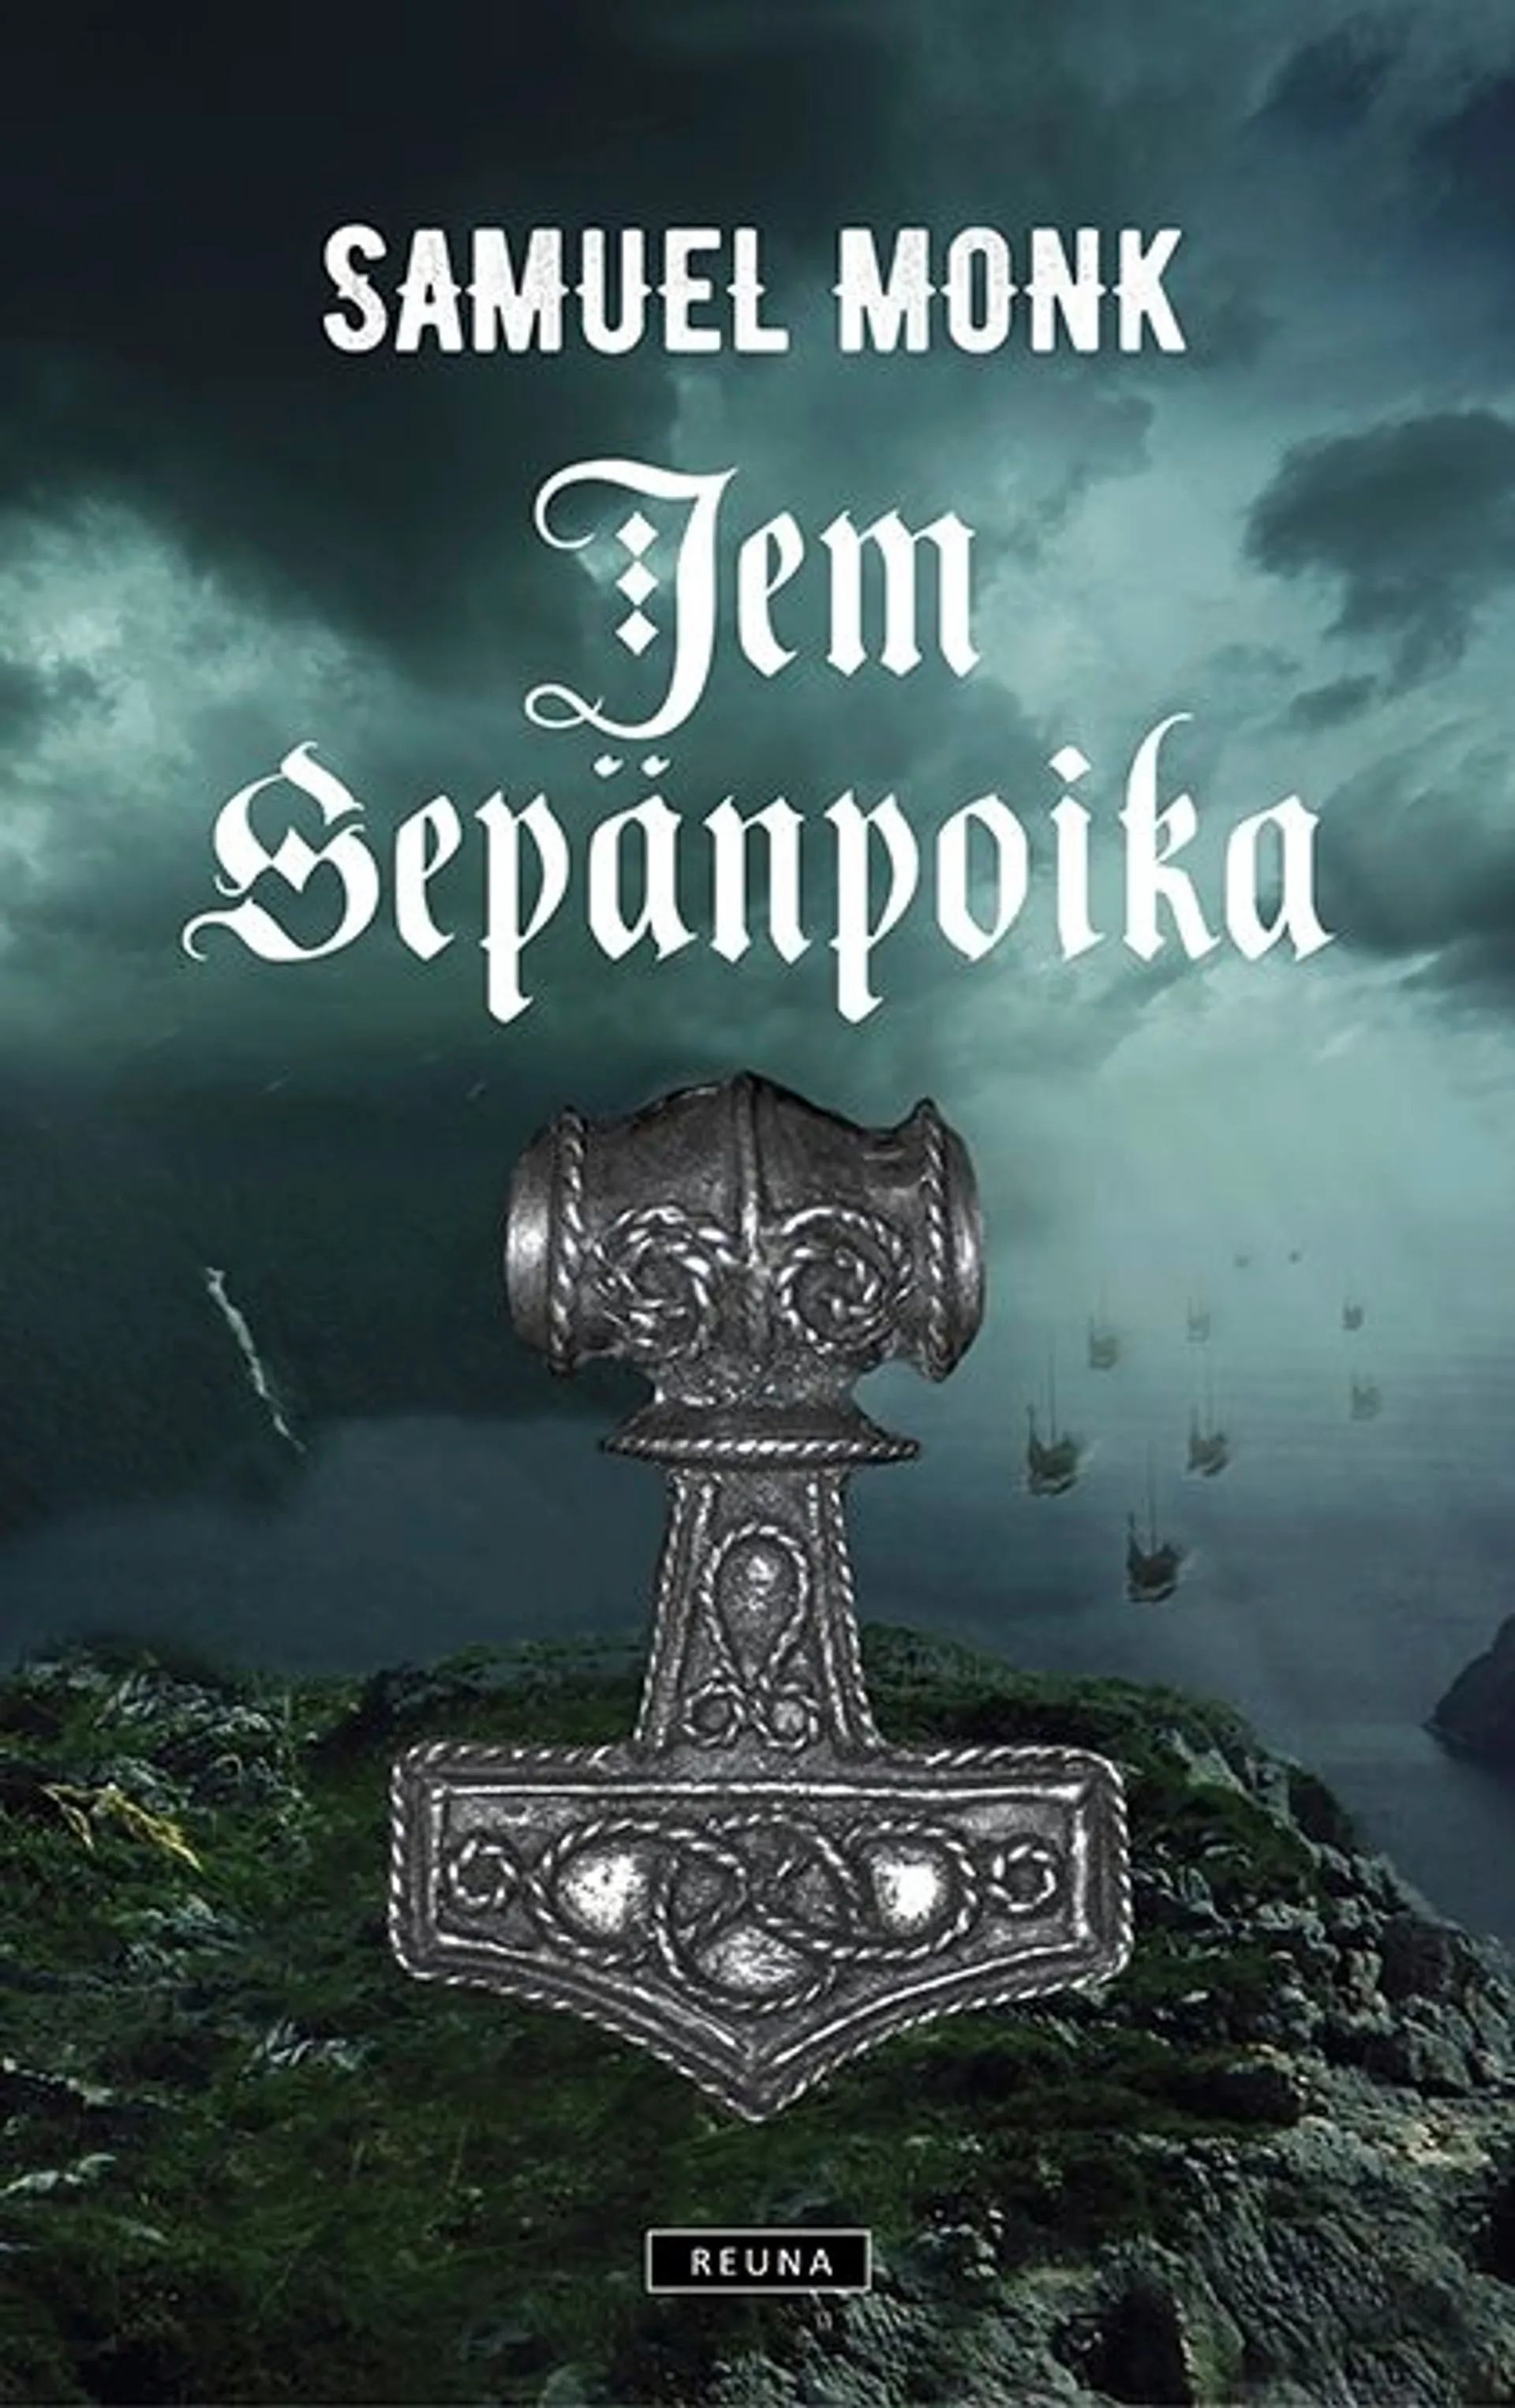 Monk, Jem Sepänpoika